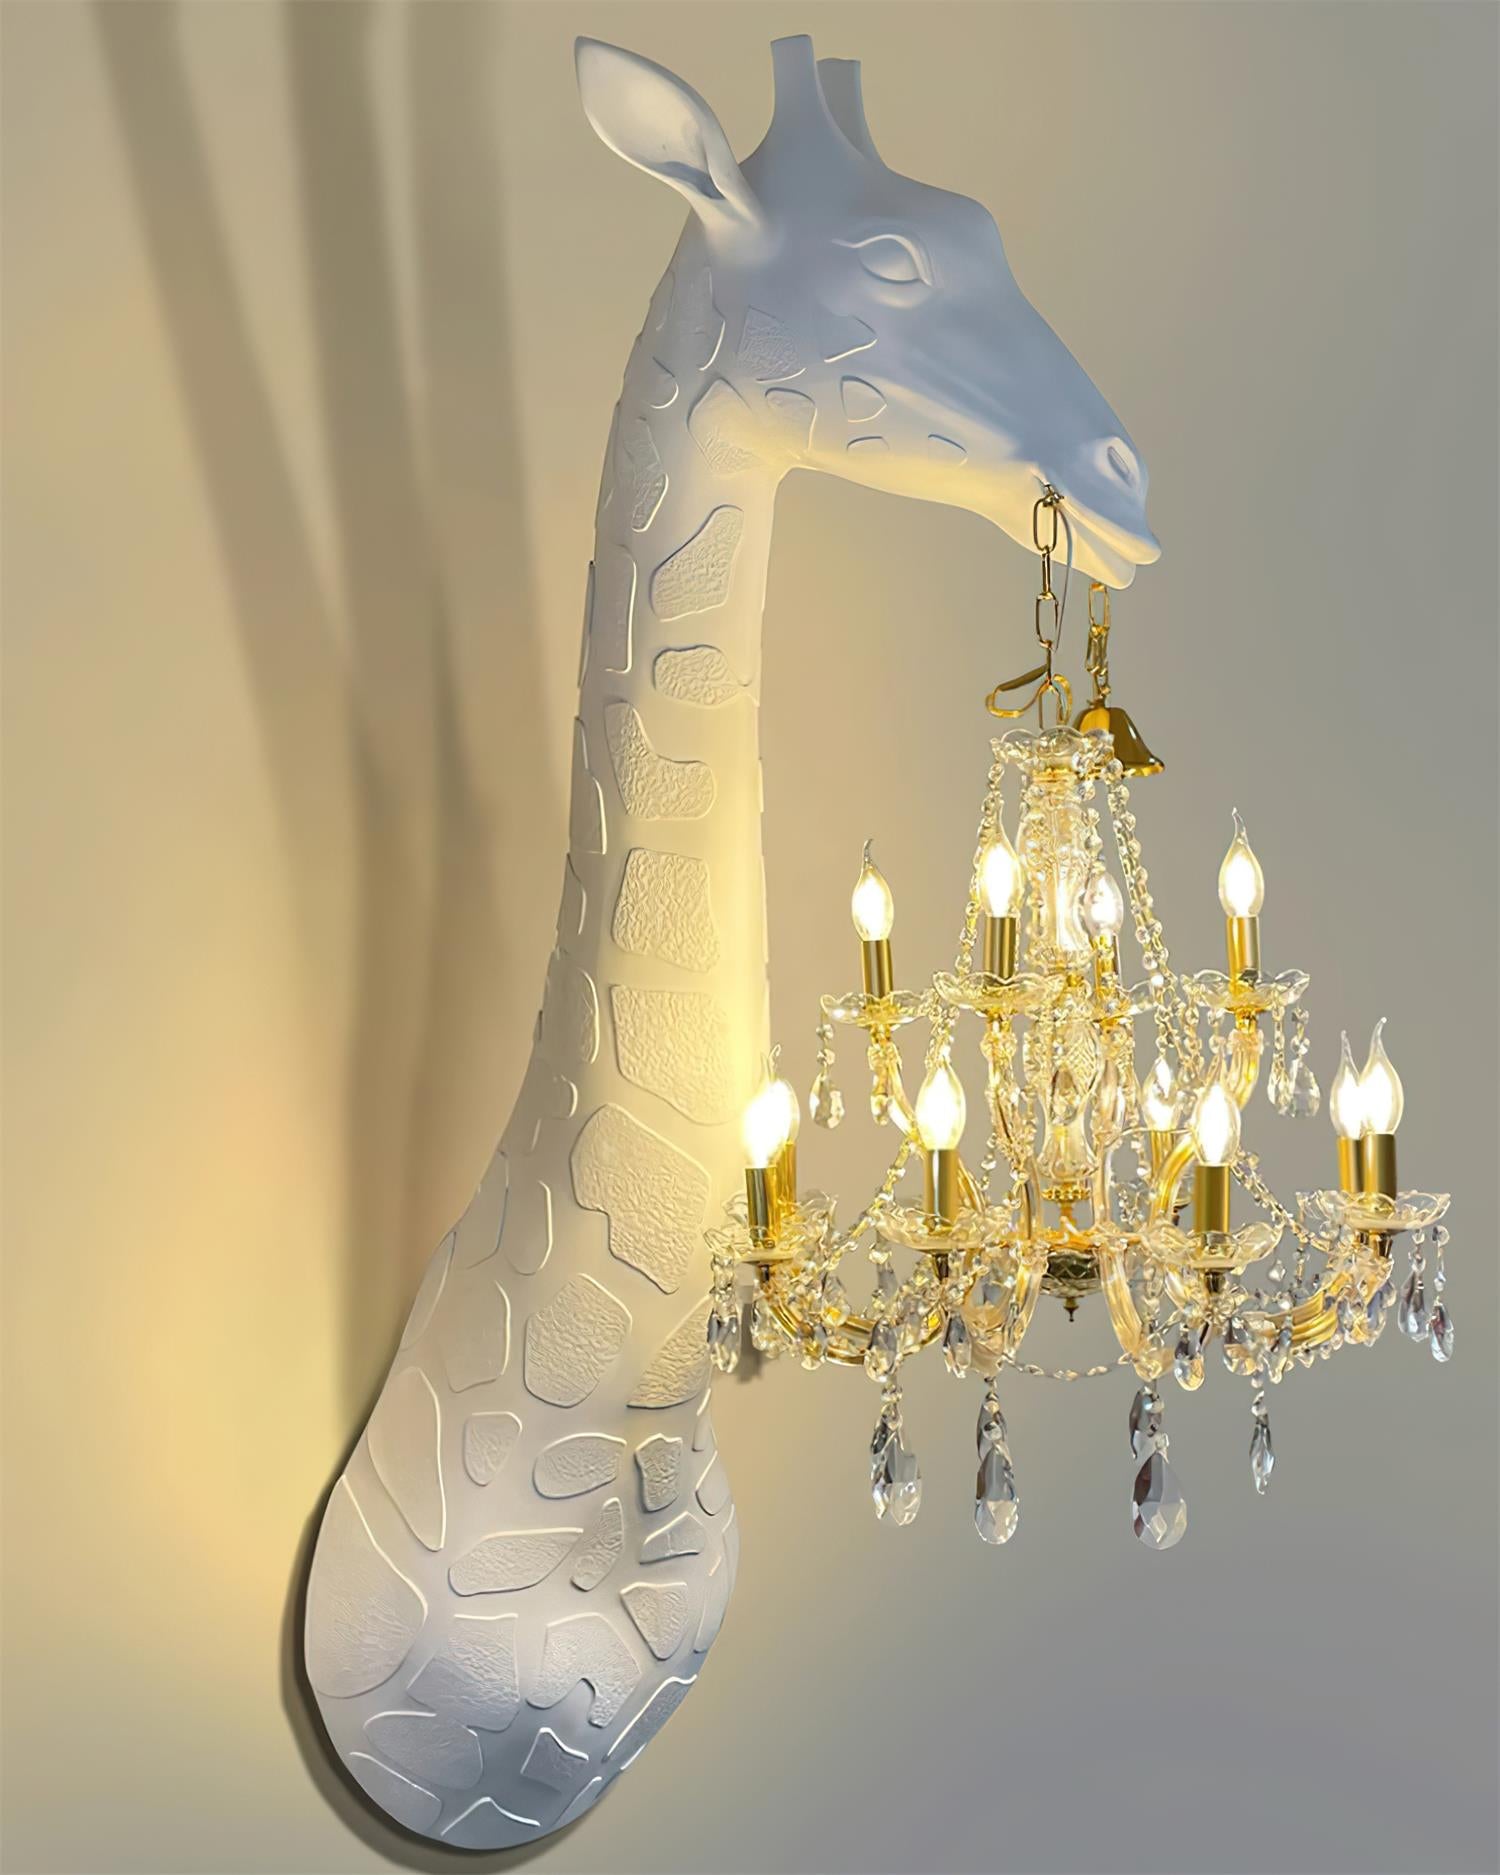 Giraffe Sculpture Lamp